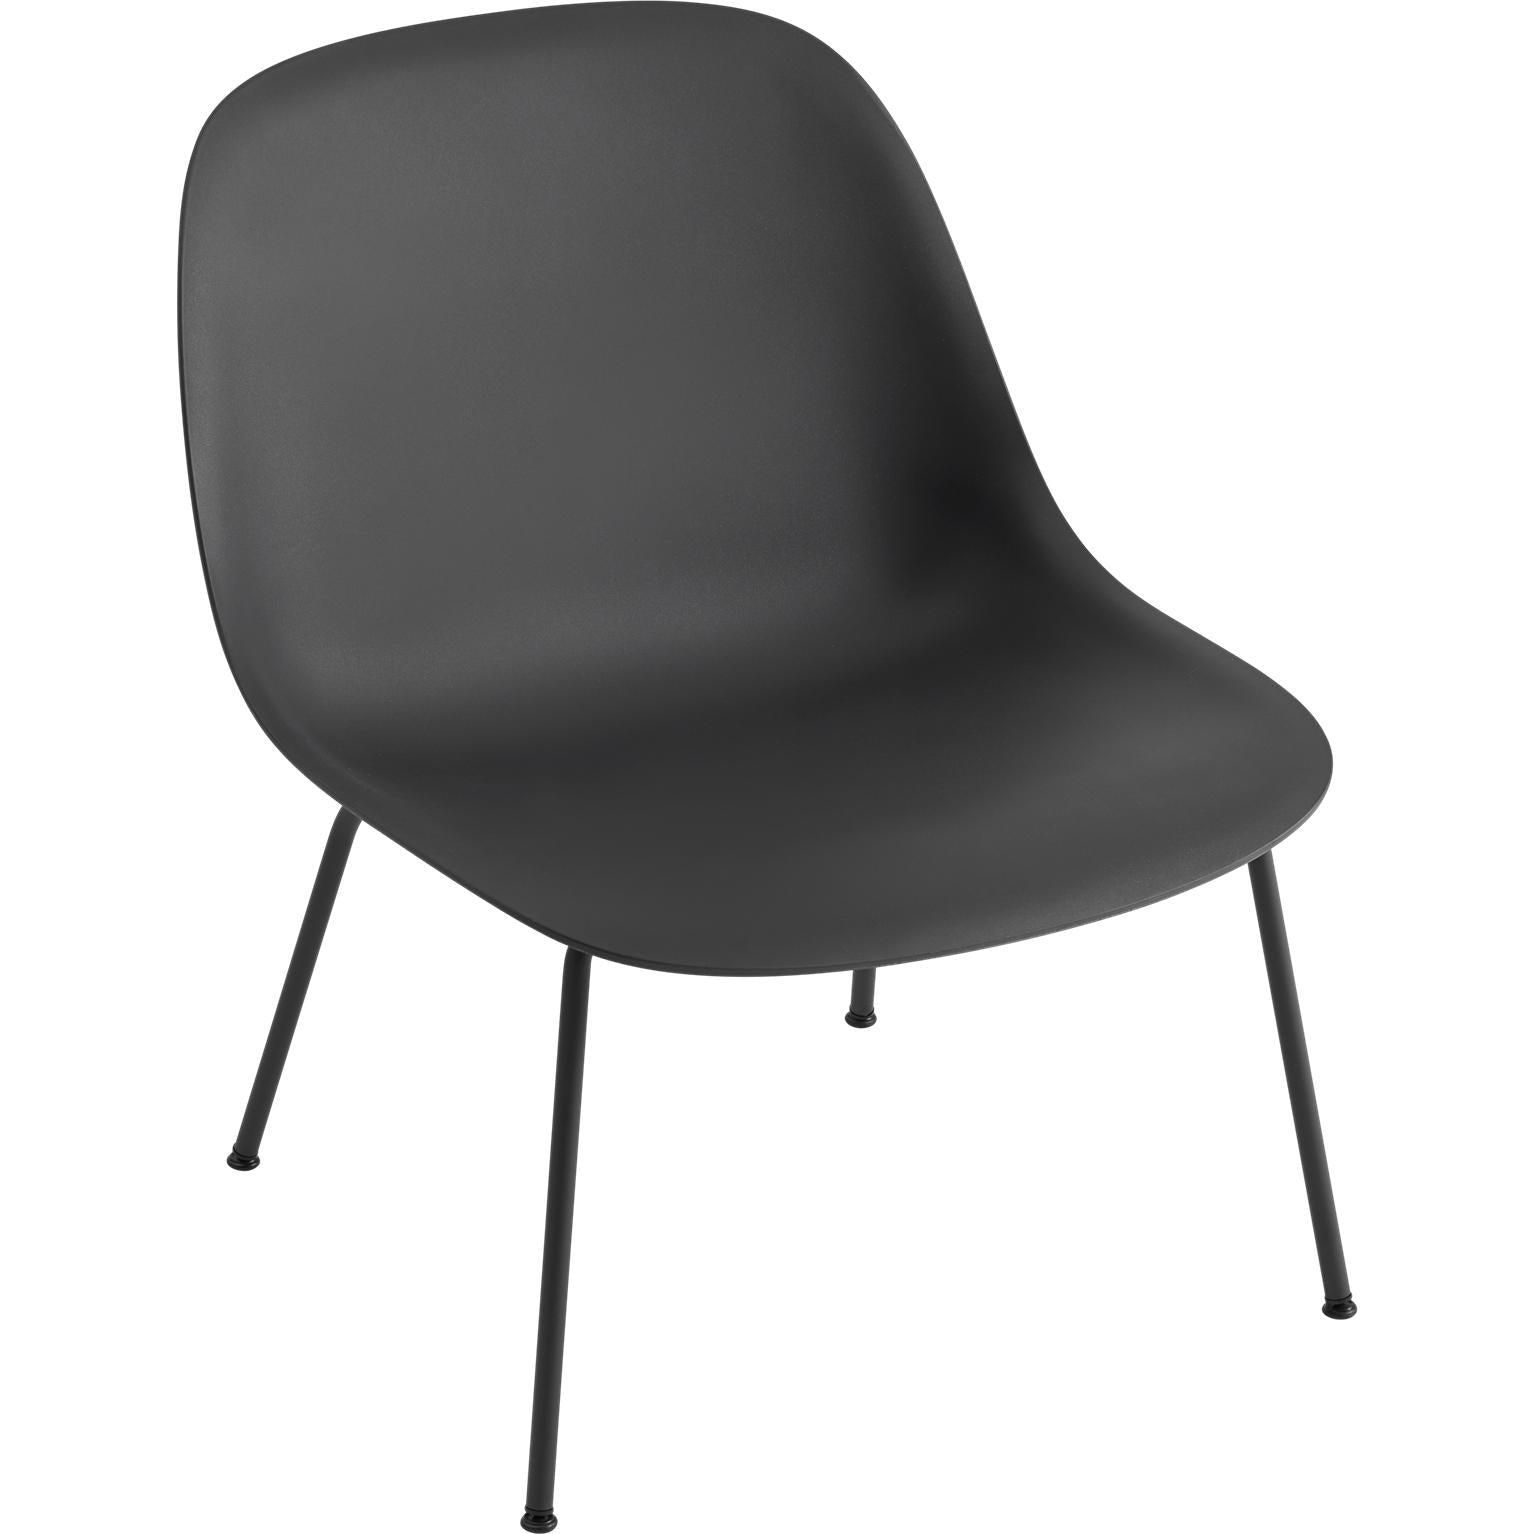 Muuto Base de tube de chaise de chaise en fibre, siège en fibre, noir